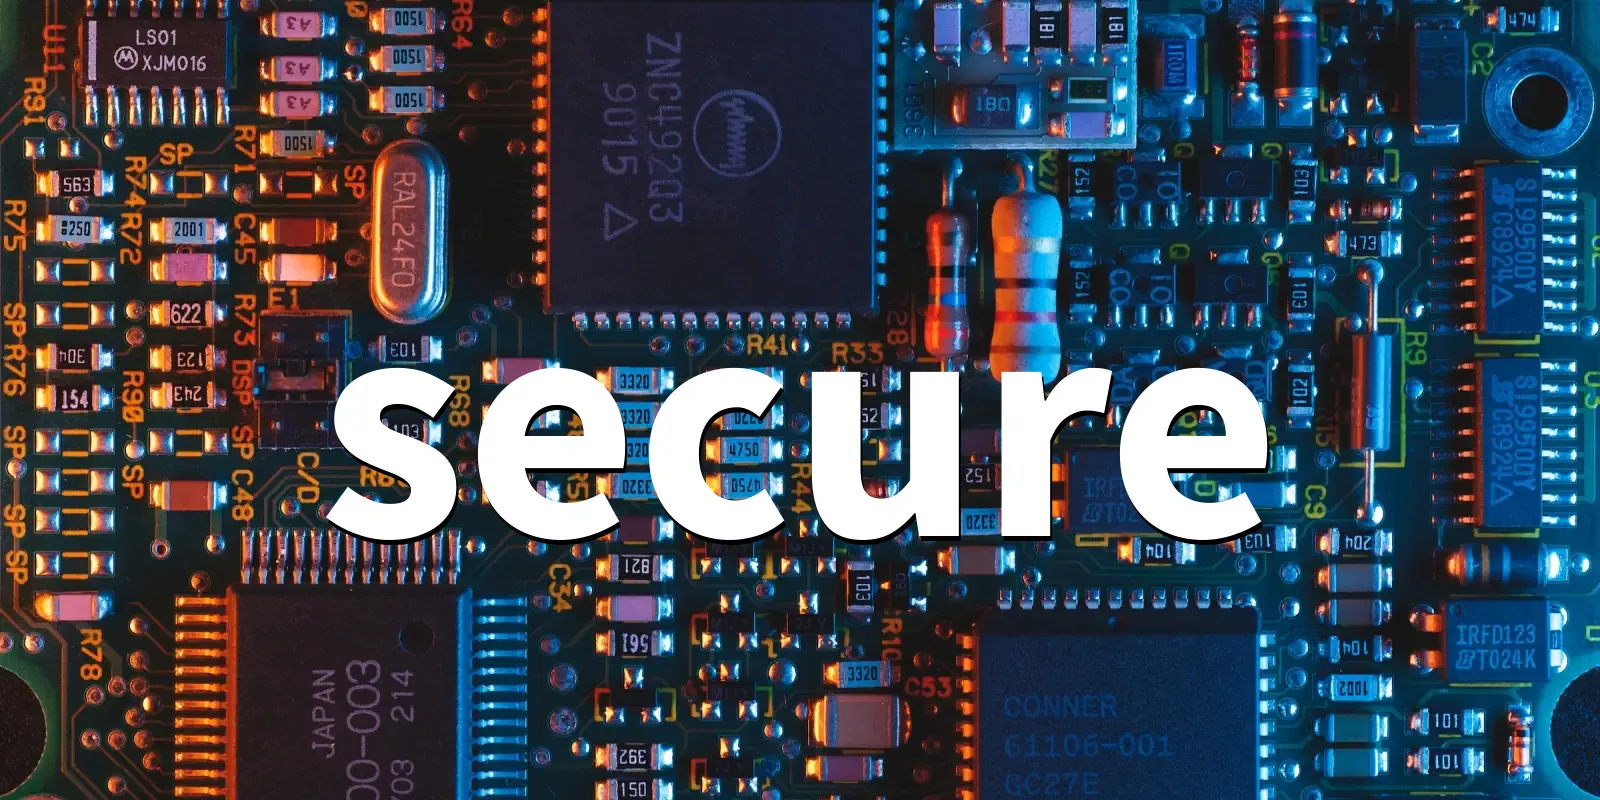 /pkg/s/secure/secure-banner.webp